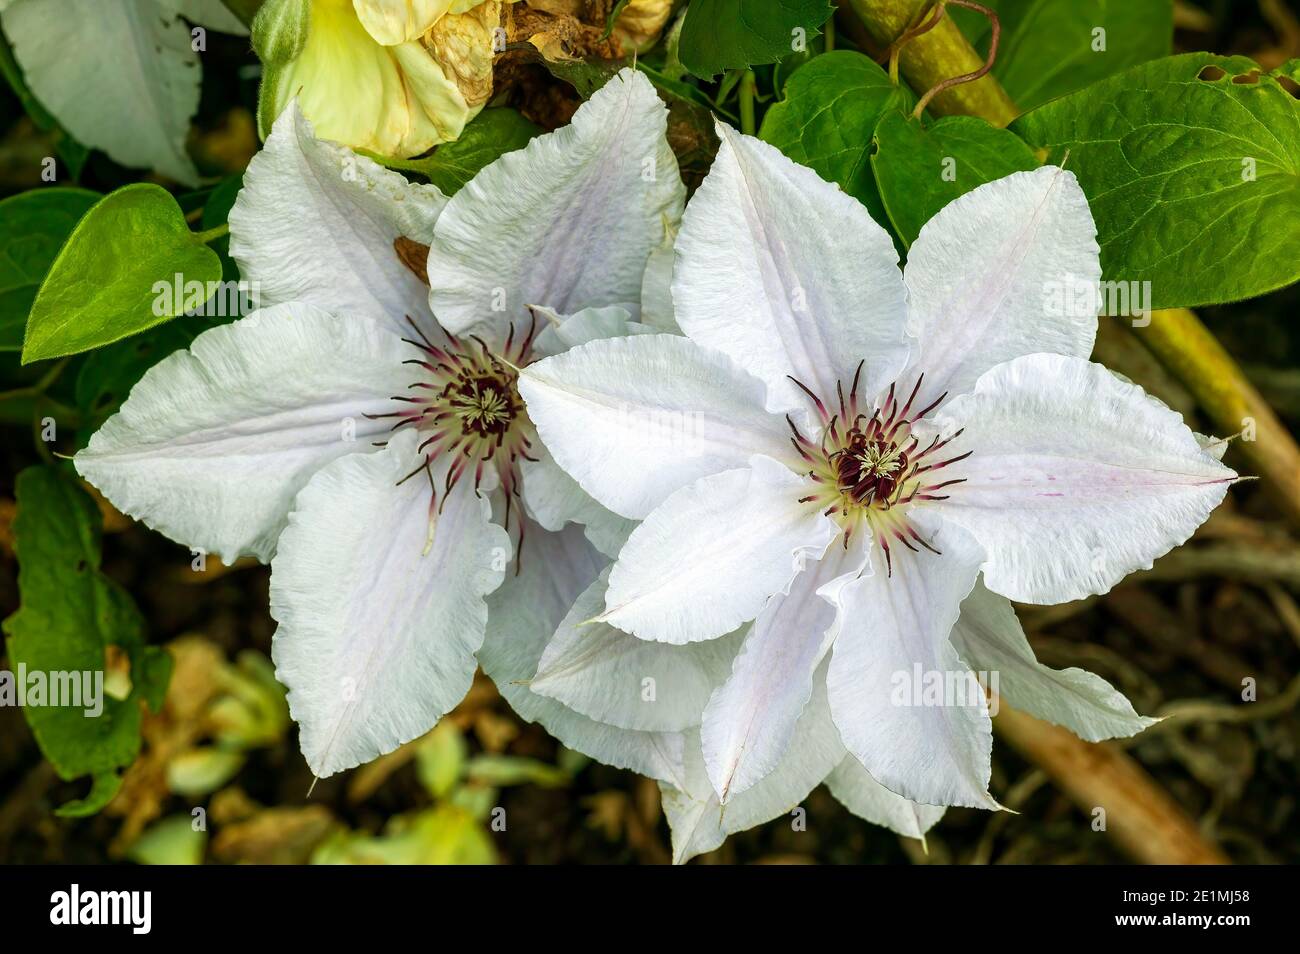 Clematis 'Reina de la siesta' una planta de arbustos floridos a principios del verano con una flor blanca de verano que se abre en mayo junio y septiembre, imagen de la foto de stock Foto de stock